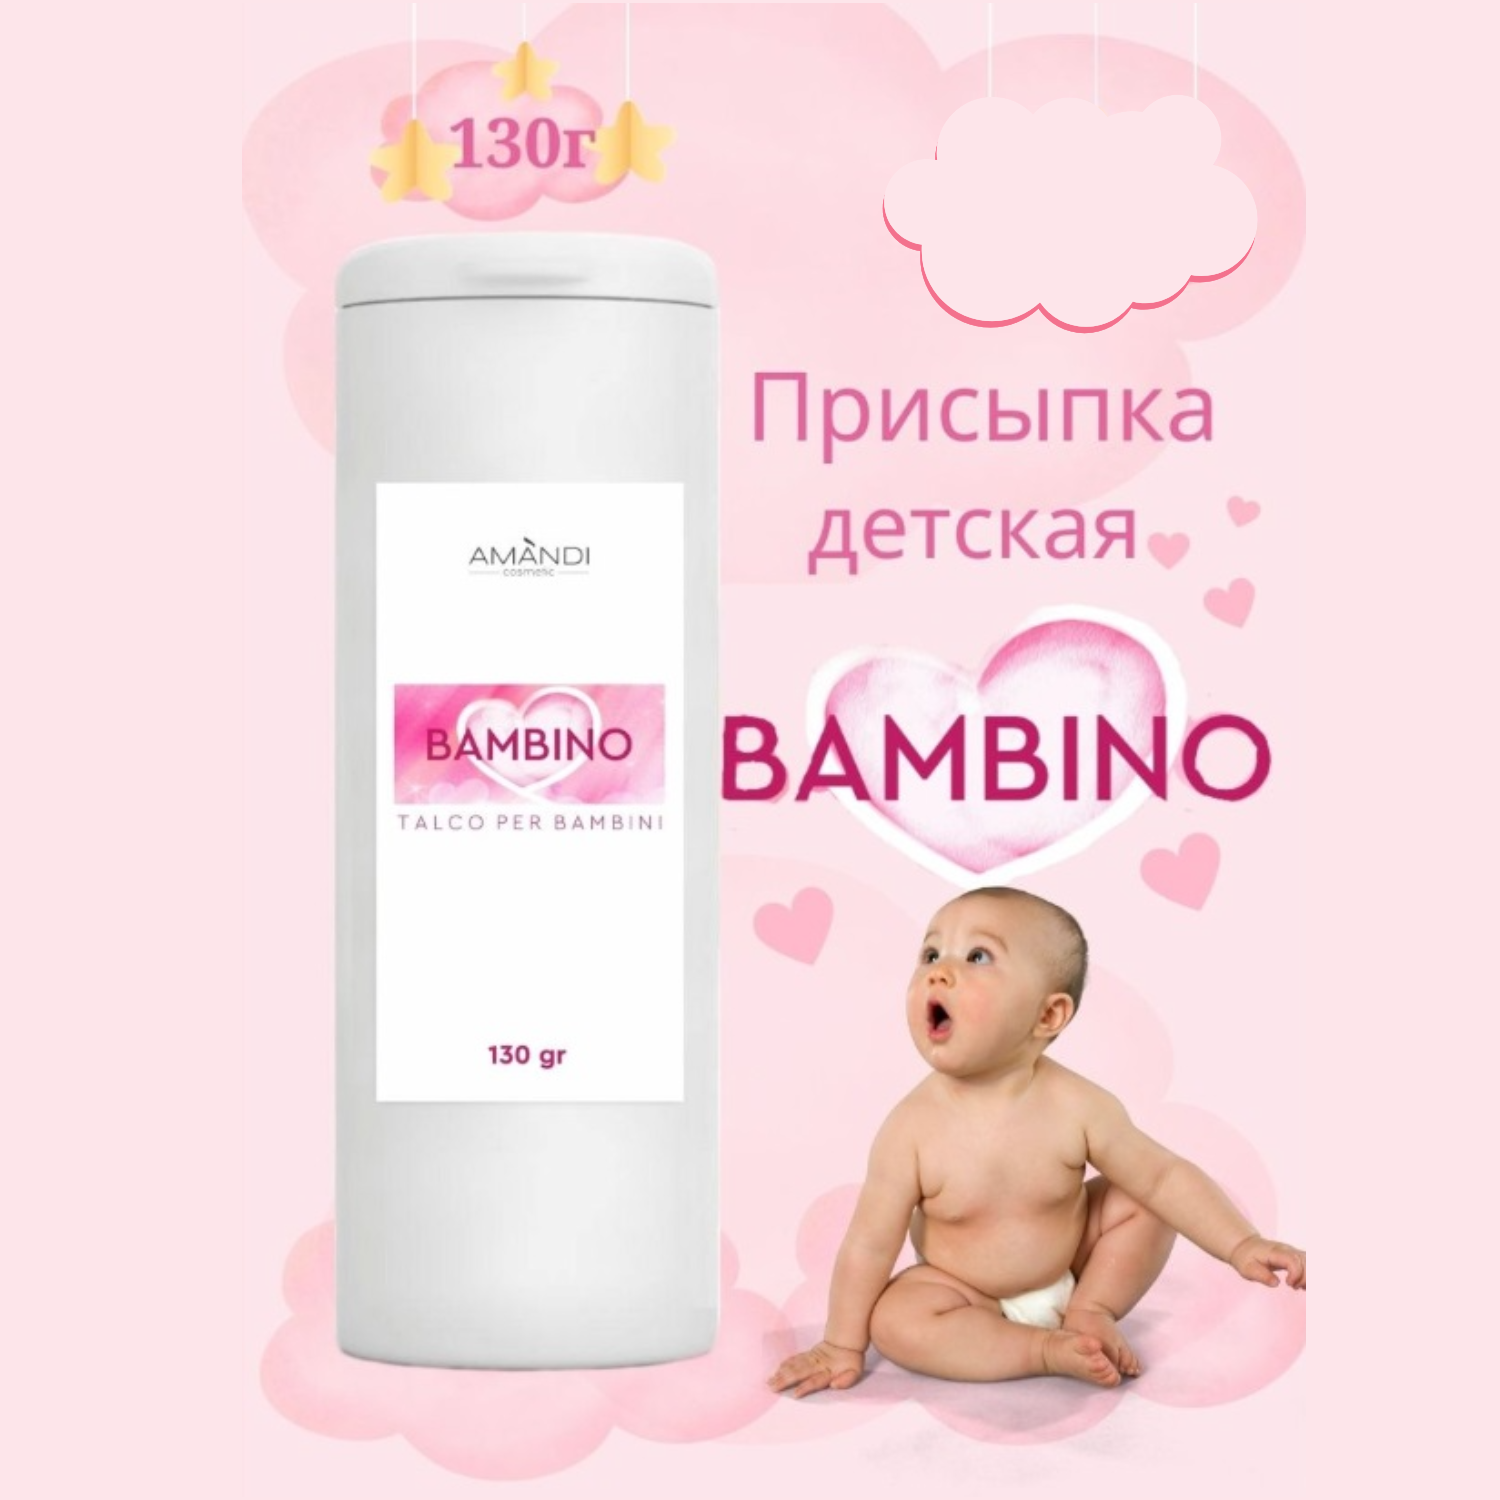 Присыпка детская AMANDI BAMBINO набор без отдушки и с ароматом арбуза 2 шт по 130 грамм - фото 2